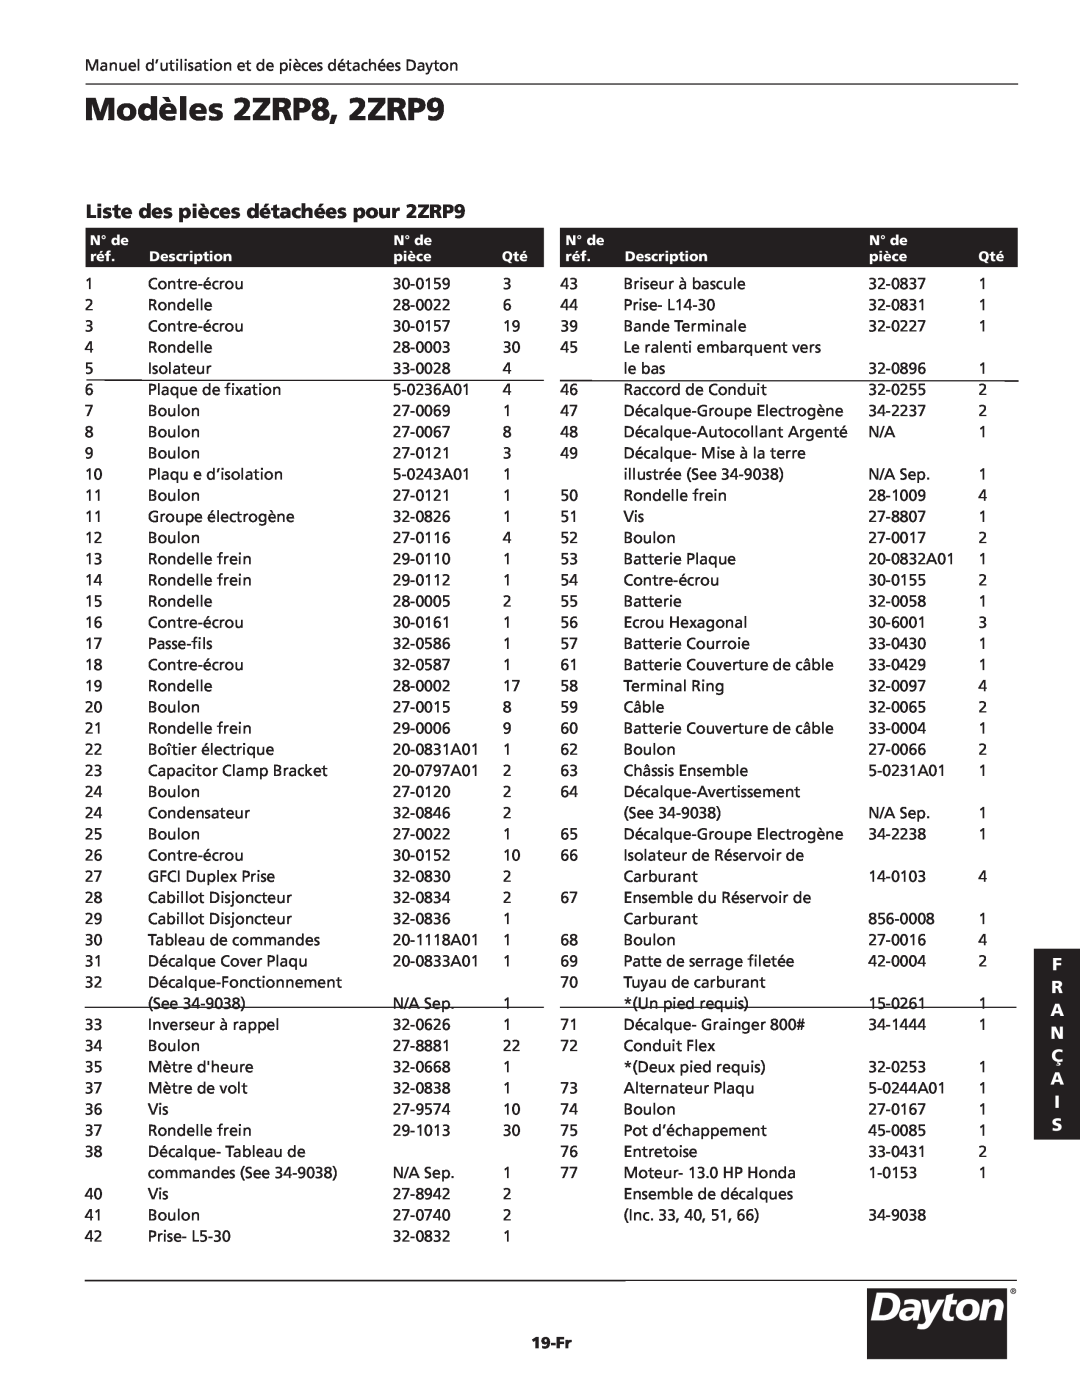 Dayton specifications Liste des pièces détachées pour 2ZRP9, Modèles 2ZRP8, 2ZRP9, F R A N Ç A I S, 19-Fr 